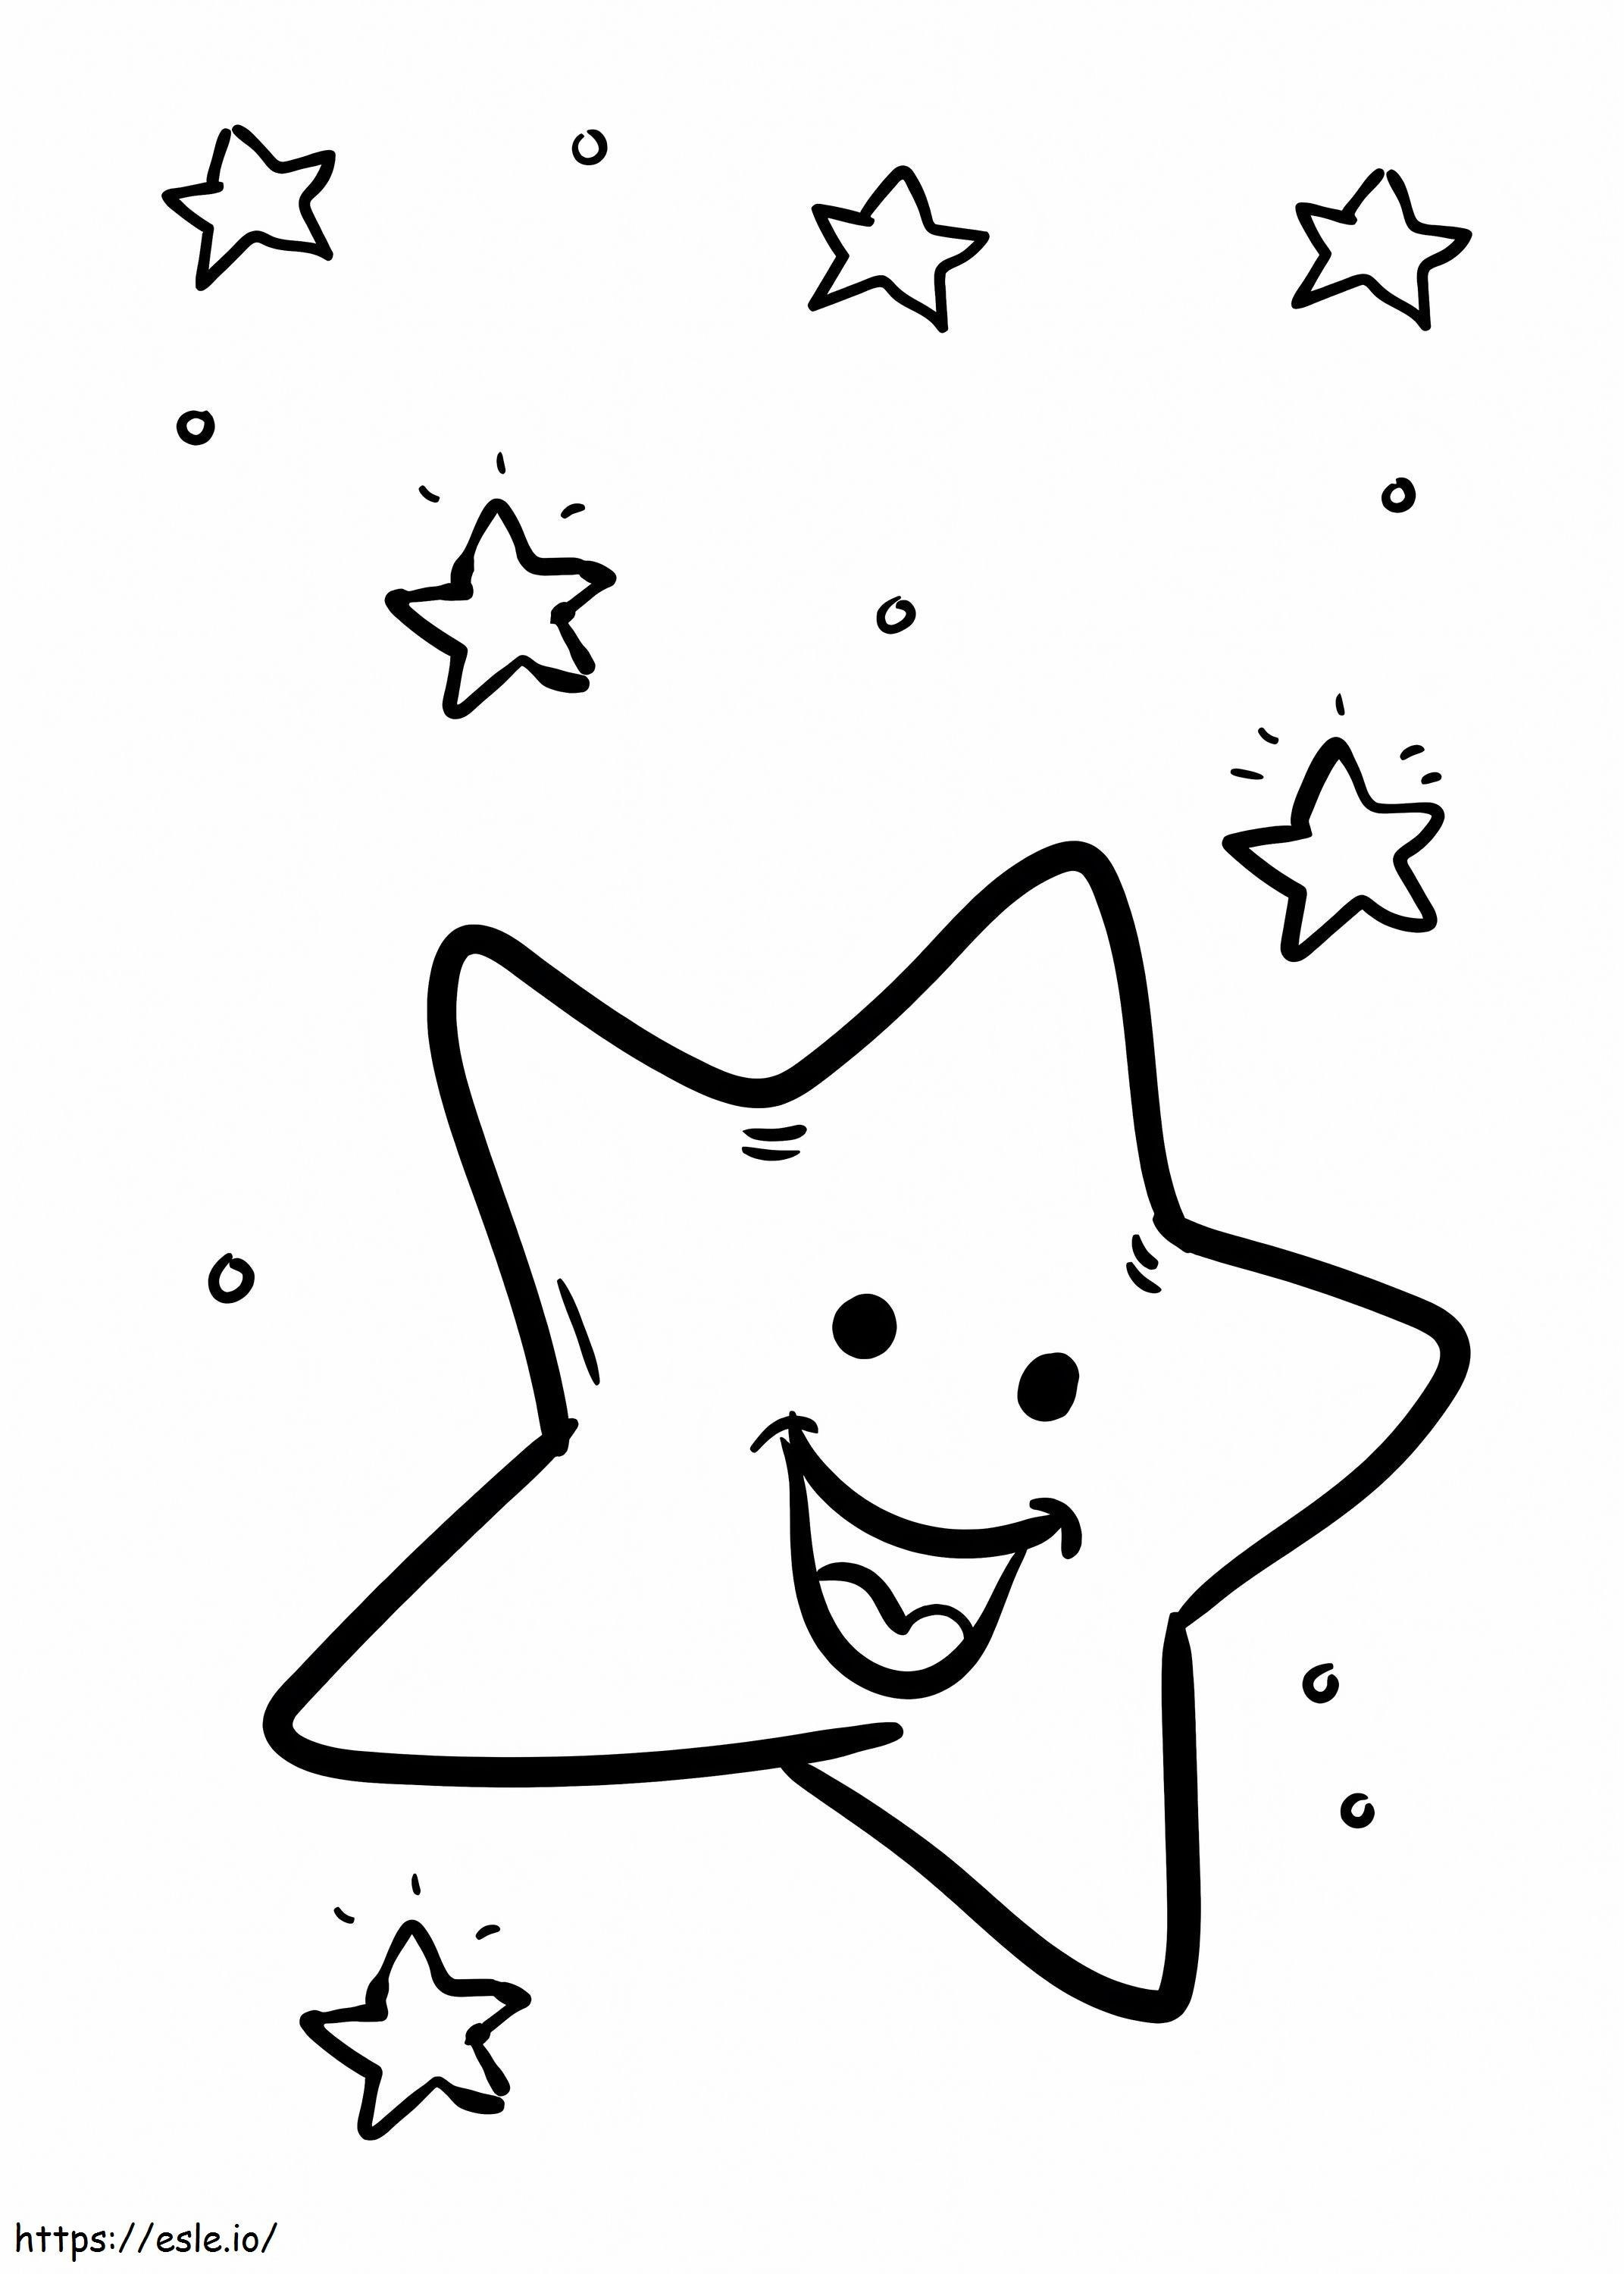 Dibujando Estrellas para colorear